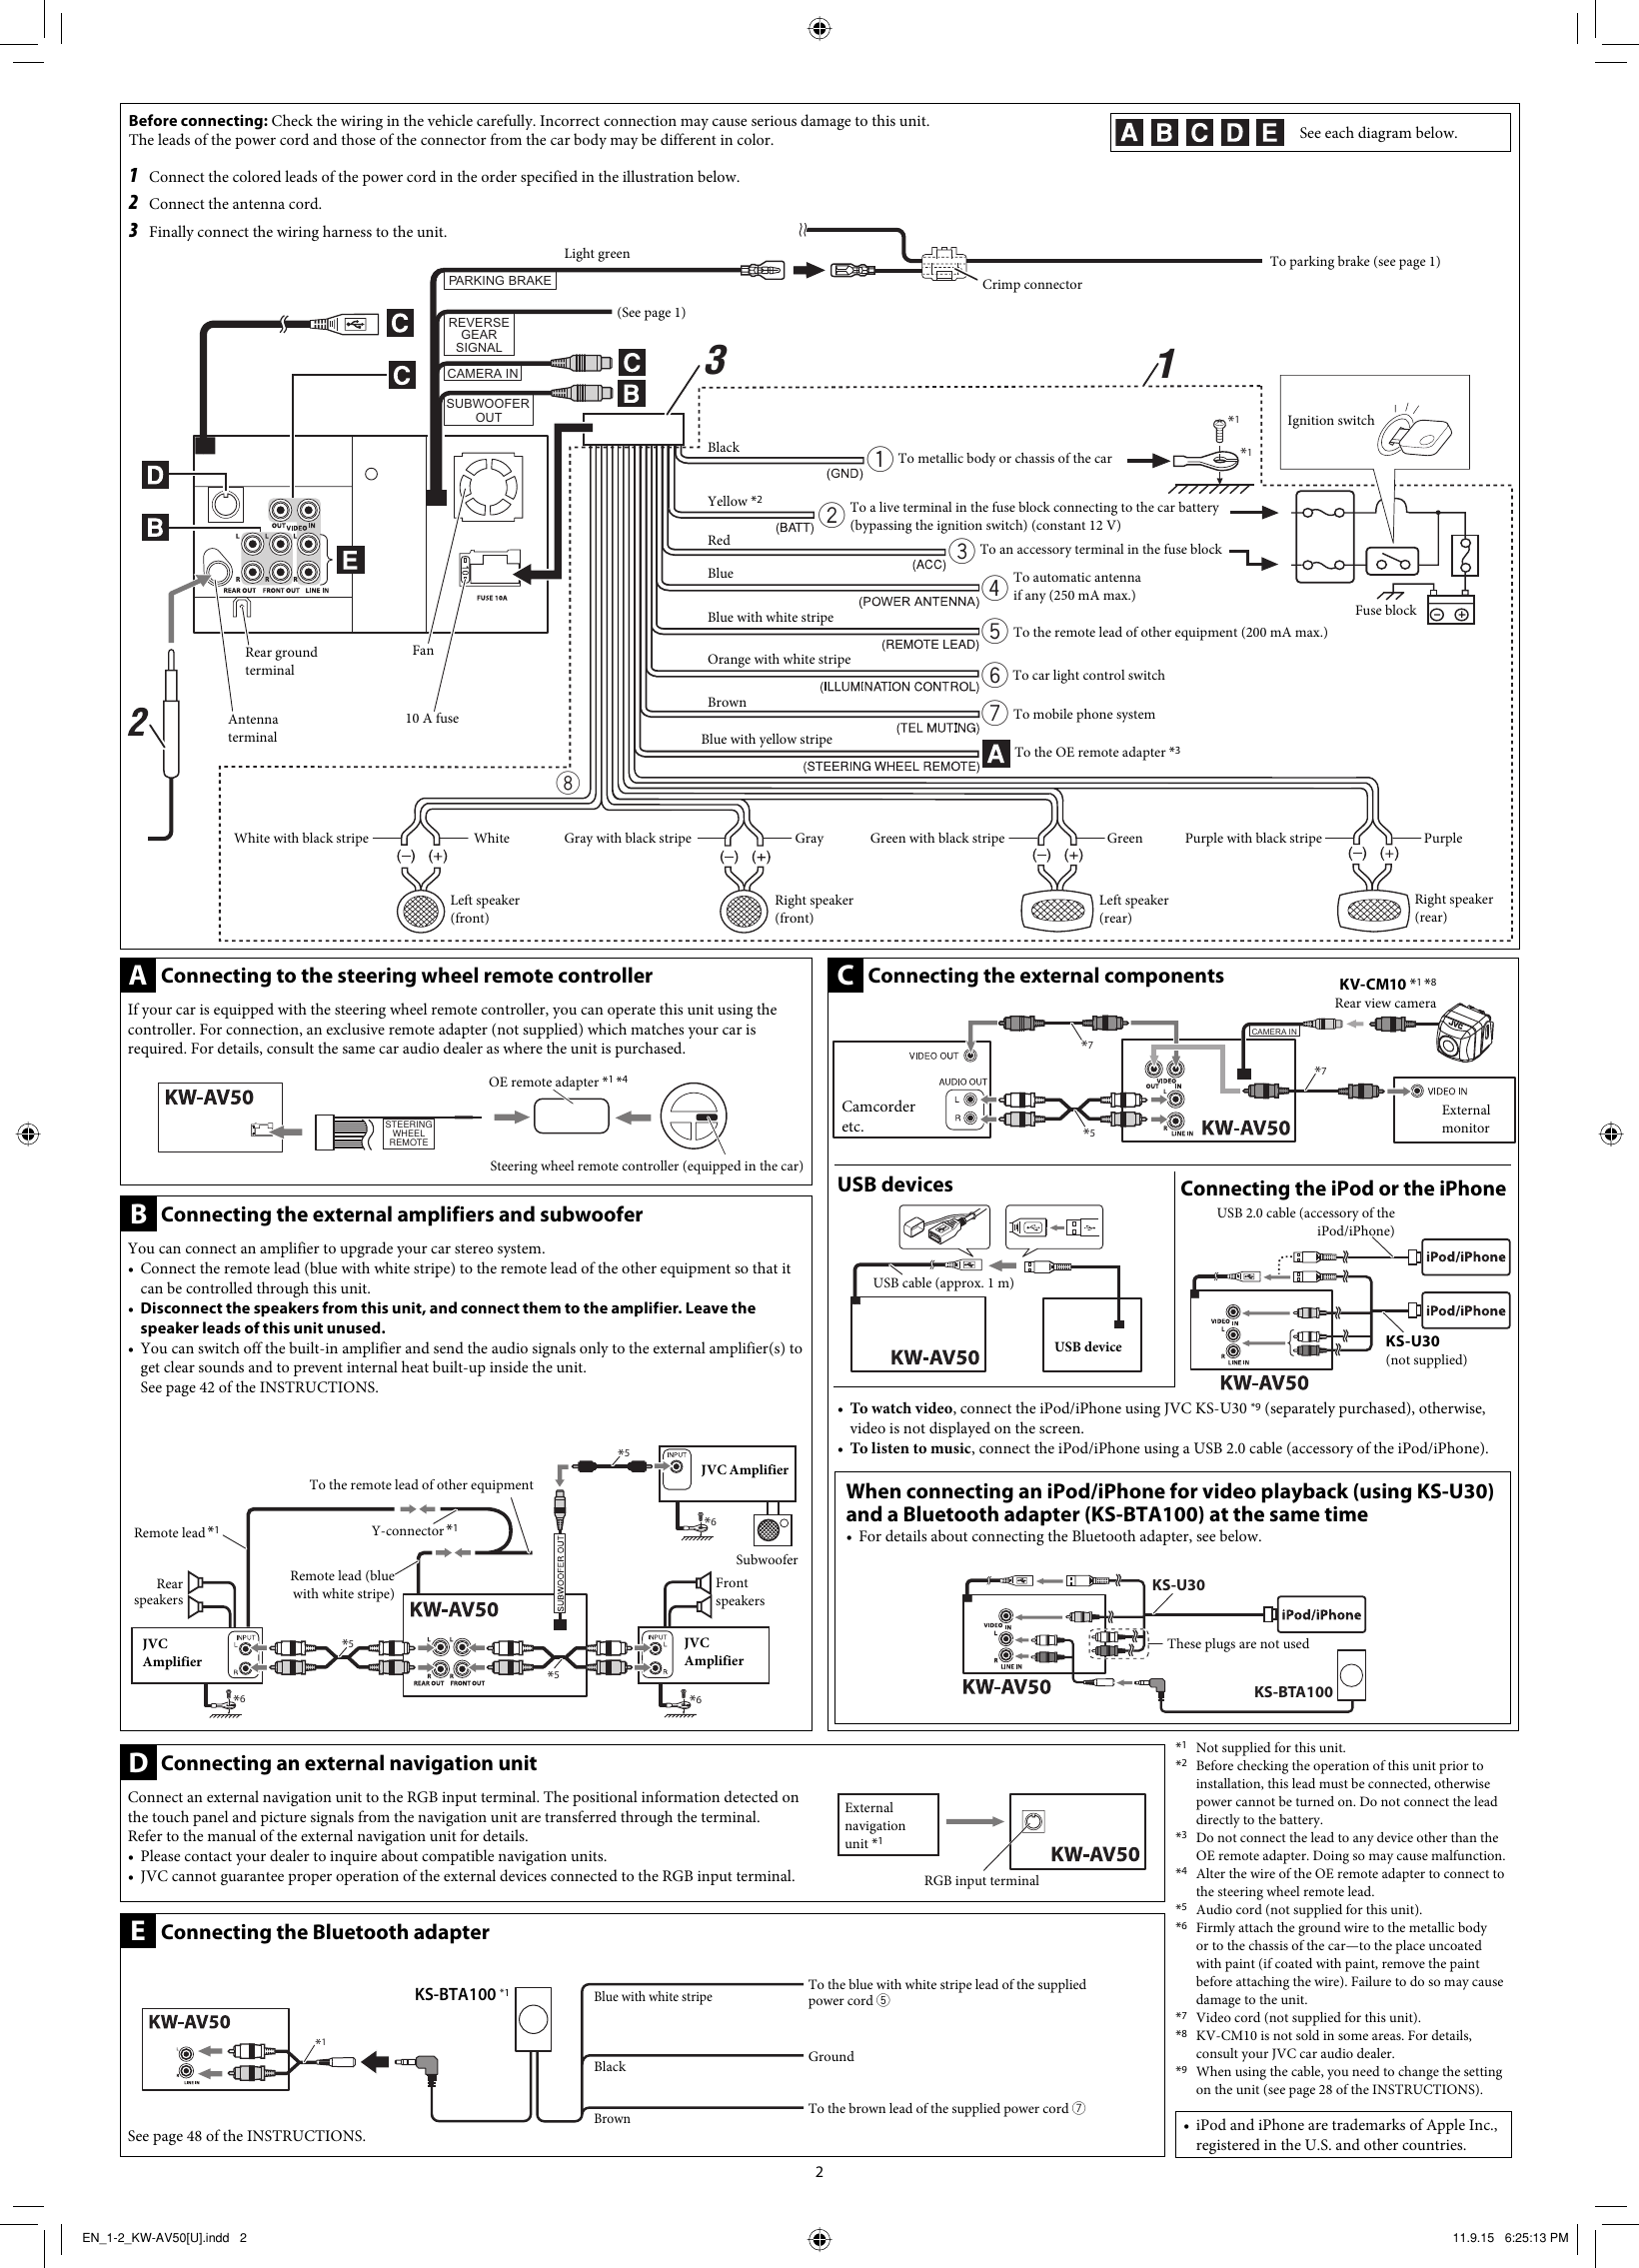 Page 2 of 6 - JVC KW-AV50U KW-AV50[U] User Manual LVT2288-002A